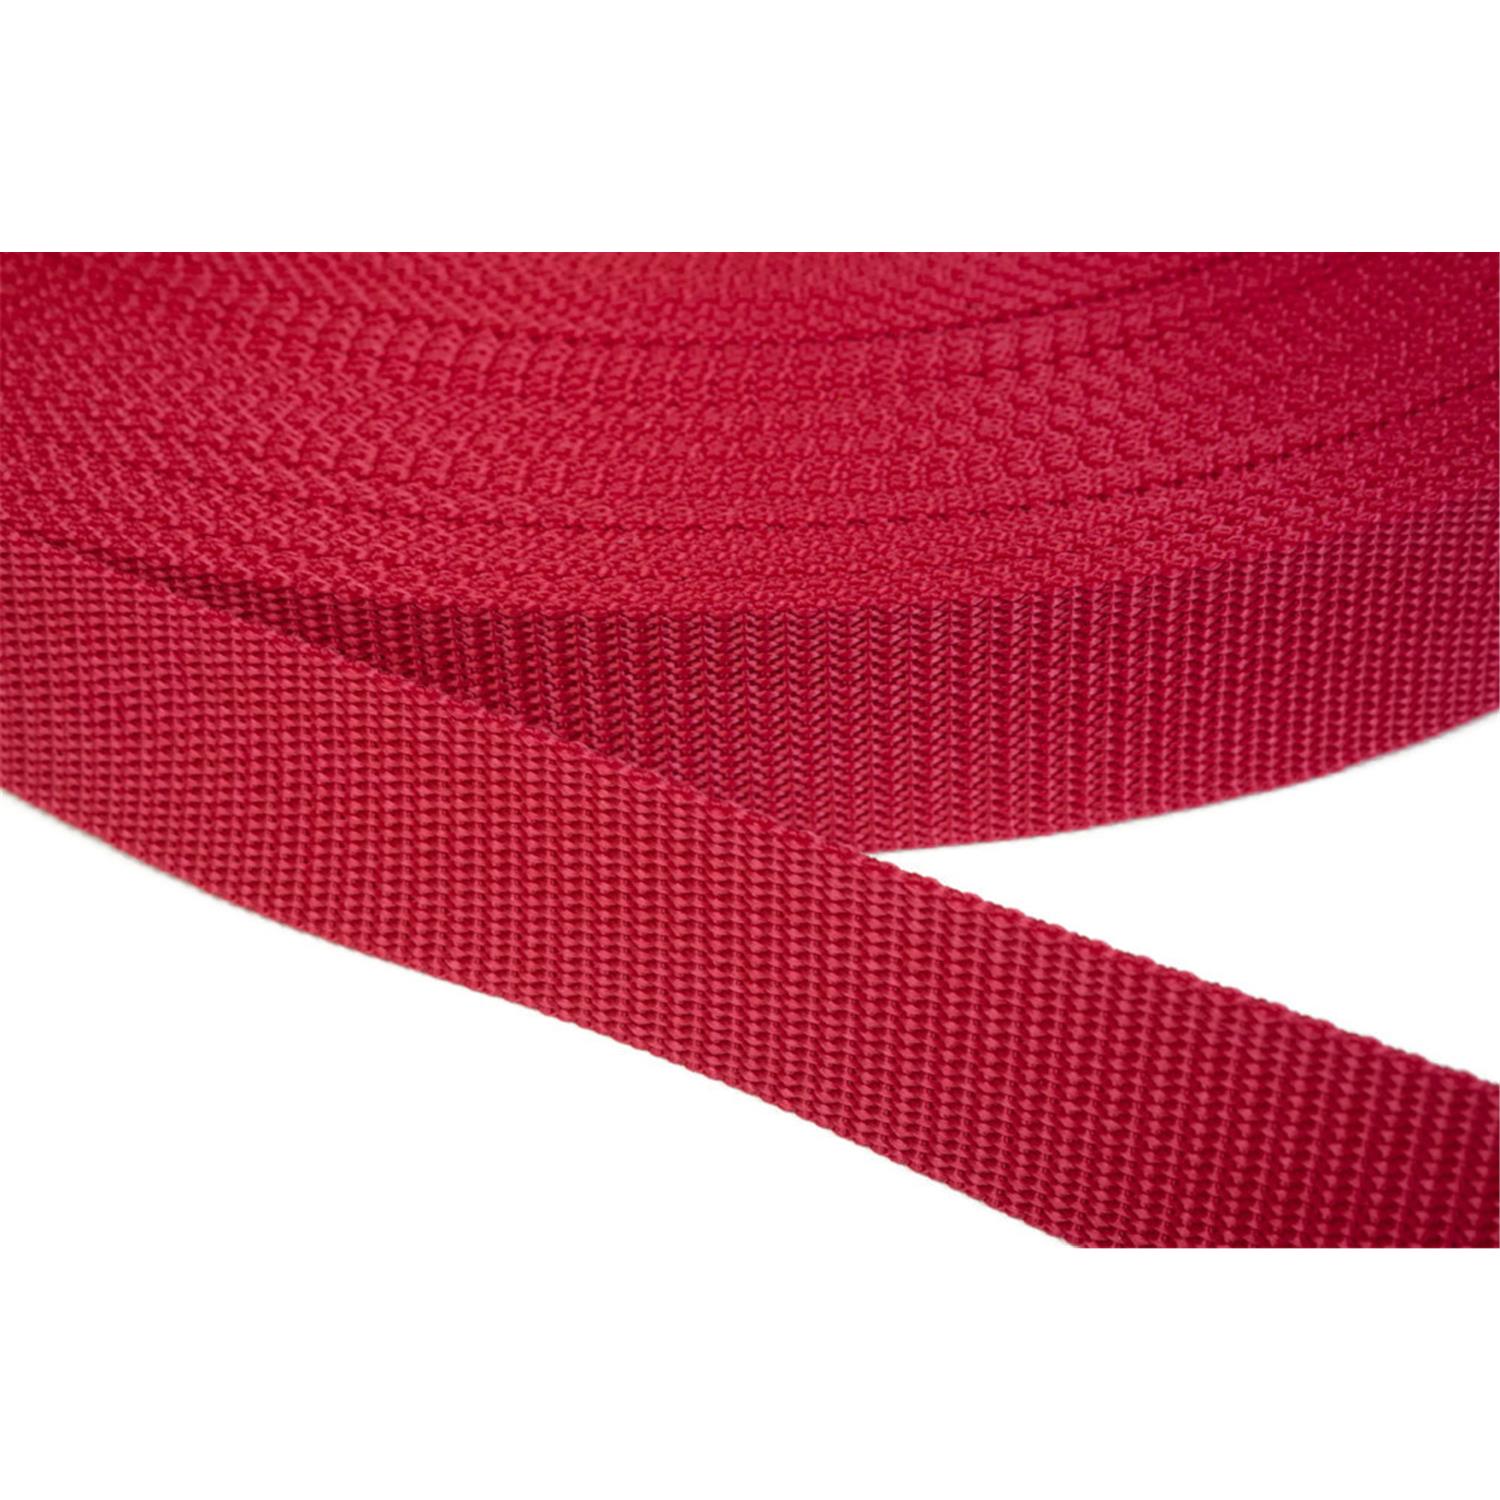 Gurtband 15mm breit aus Polypropylen in 41 Farben 19 - rot 12 Meter